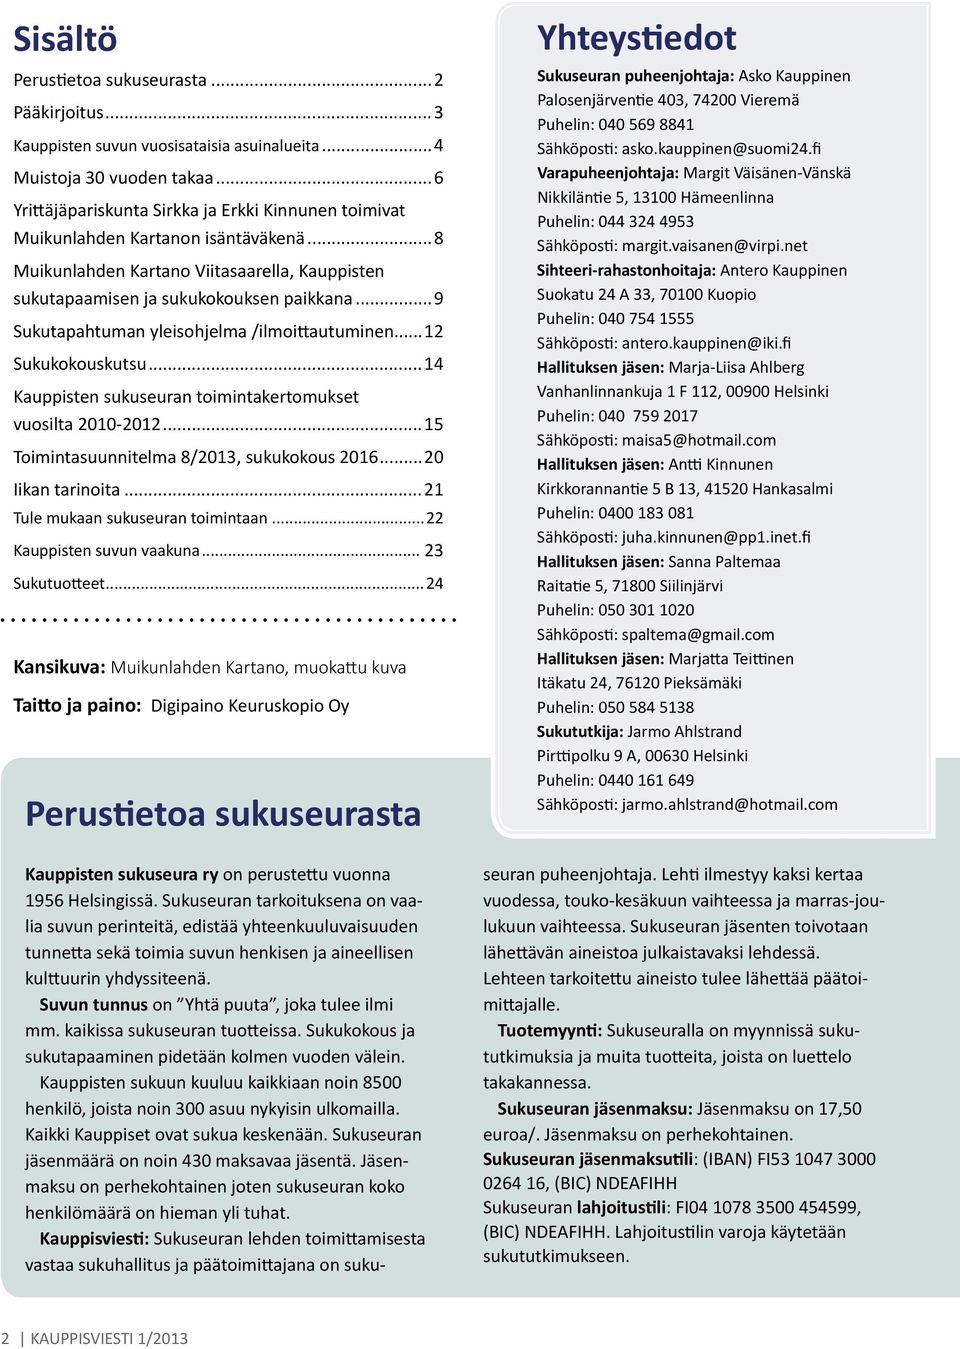 ..9 Sukutapahtuman yleisohjelma /ilmoittautuminen...12 Sukukokouskutsu...14 Kauppisten sukuseuran toimintakertomukset vuosilta 2010-2012...15 Toimintasuunnitelma 8/2013, sukukokous 2016.